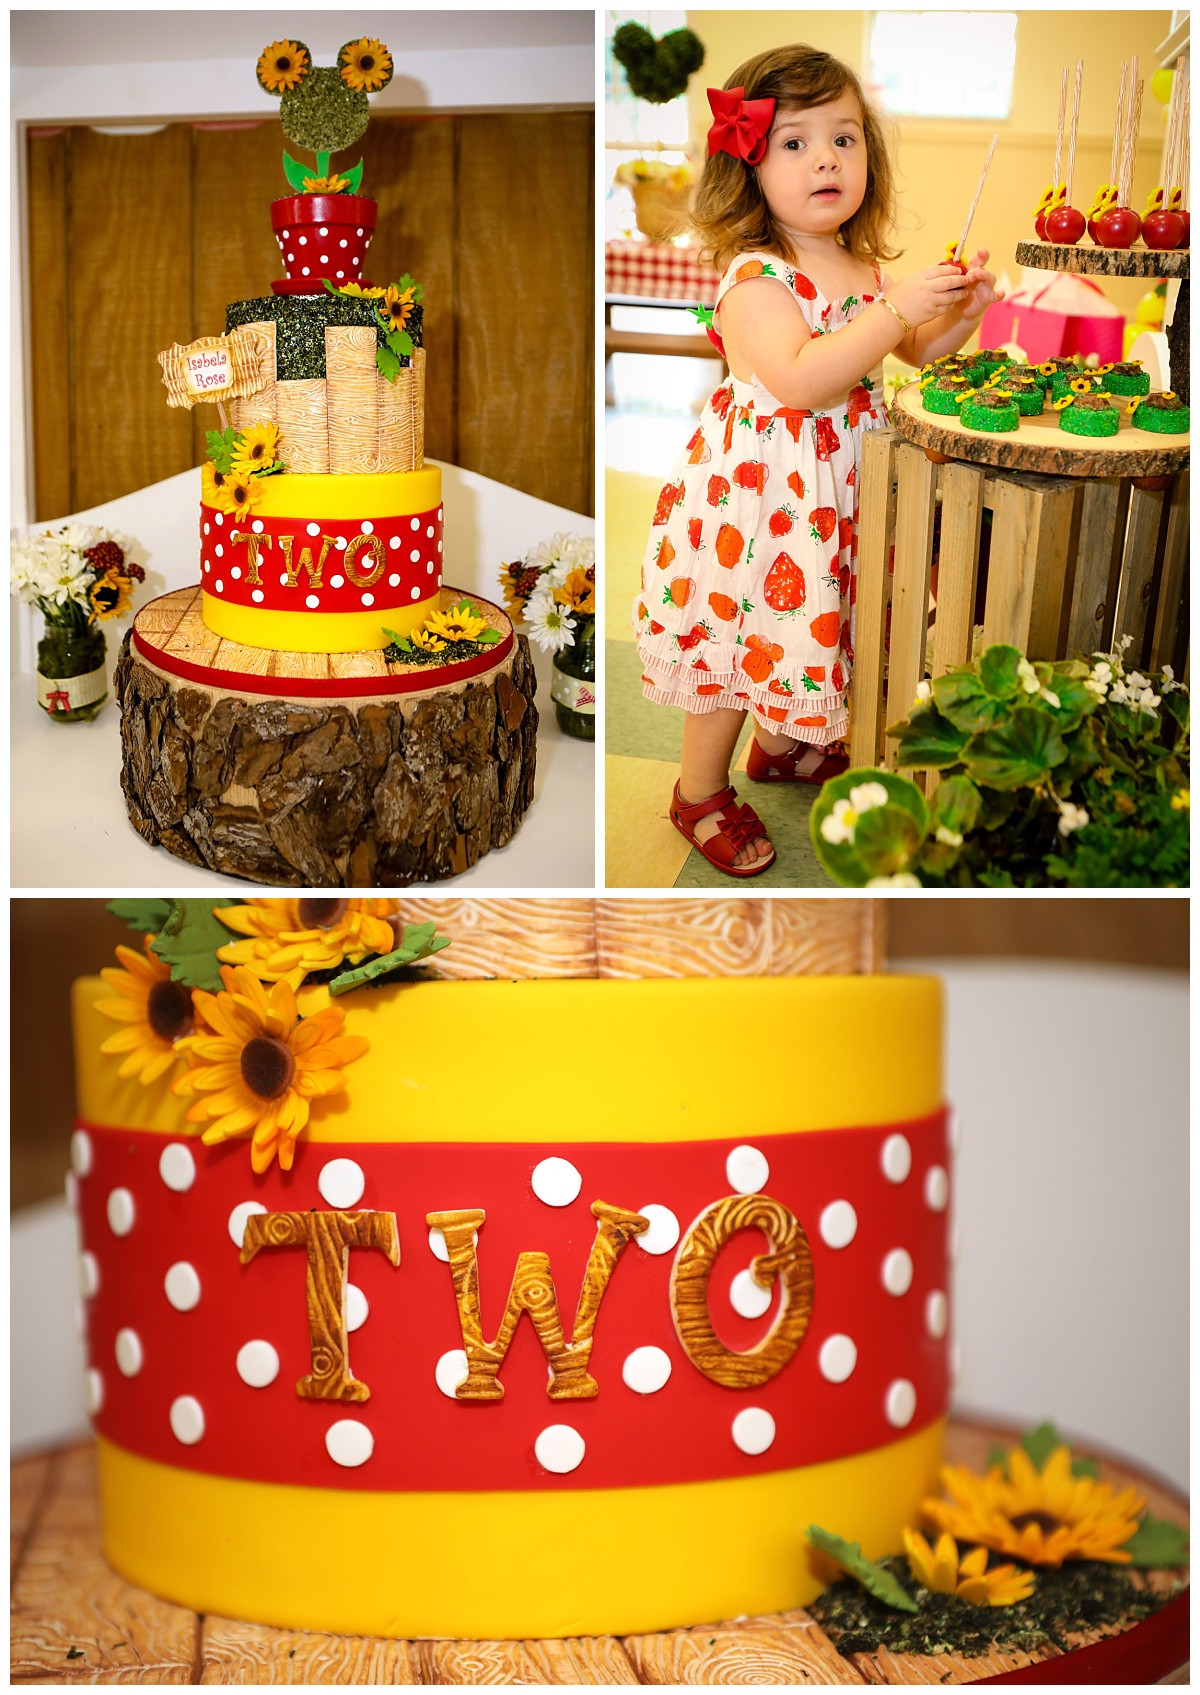 Customized Birthday Cakes
 Isabela s 2nd Birthday Cake